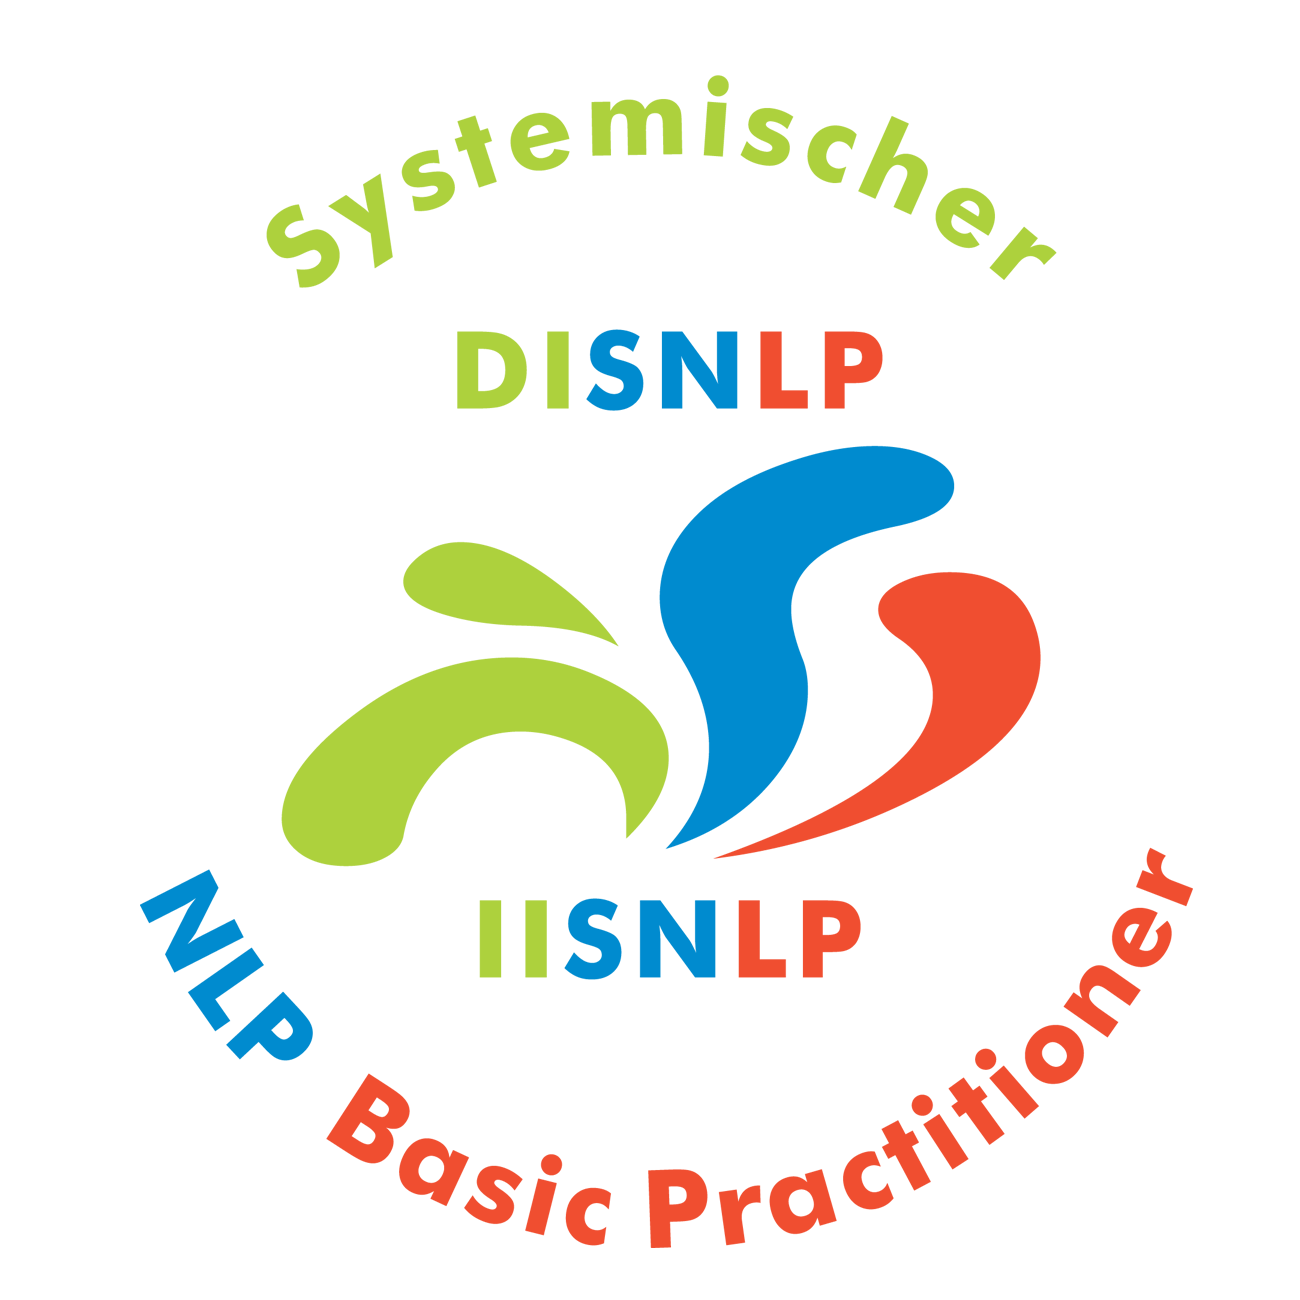 Seminar Selbstbewusstsein, Selbstvertrauen, Selbstwert, Selbstsicherheit stärken Rheinland Pfalz mit NLP Coaching Kurs für mehr Selbstbewusstsein